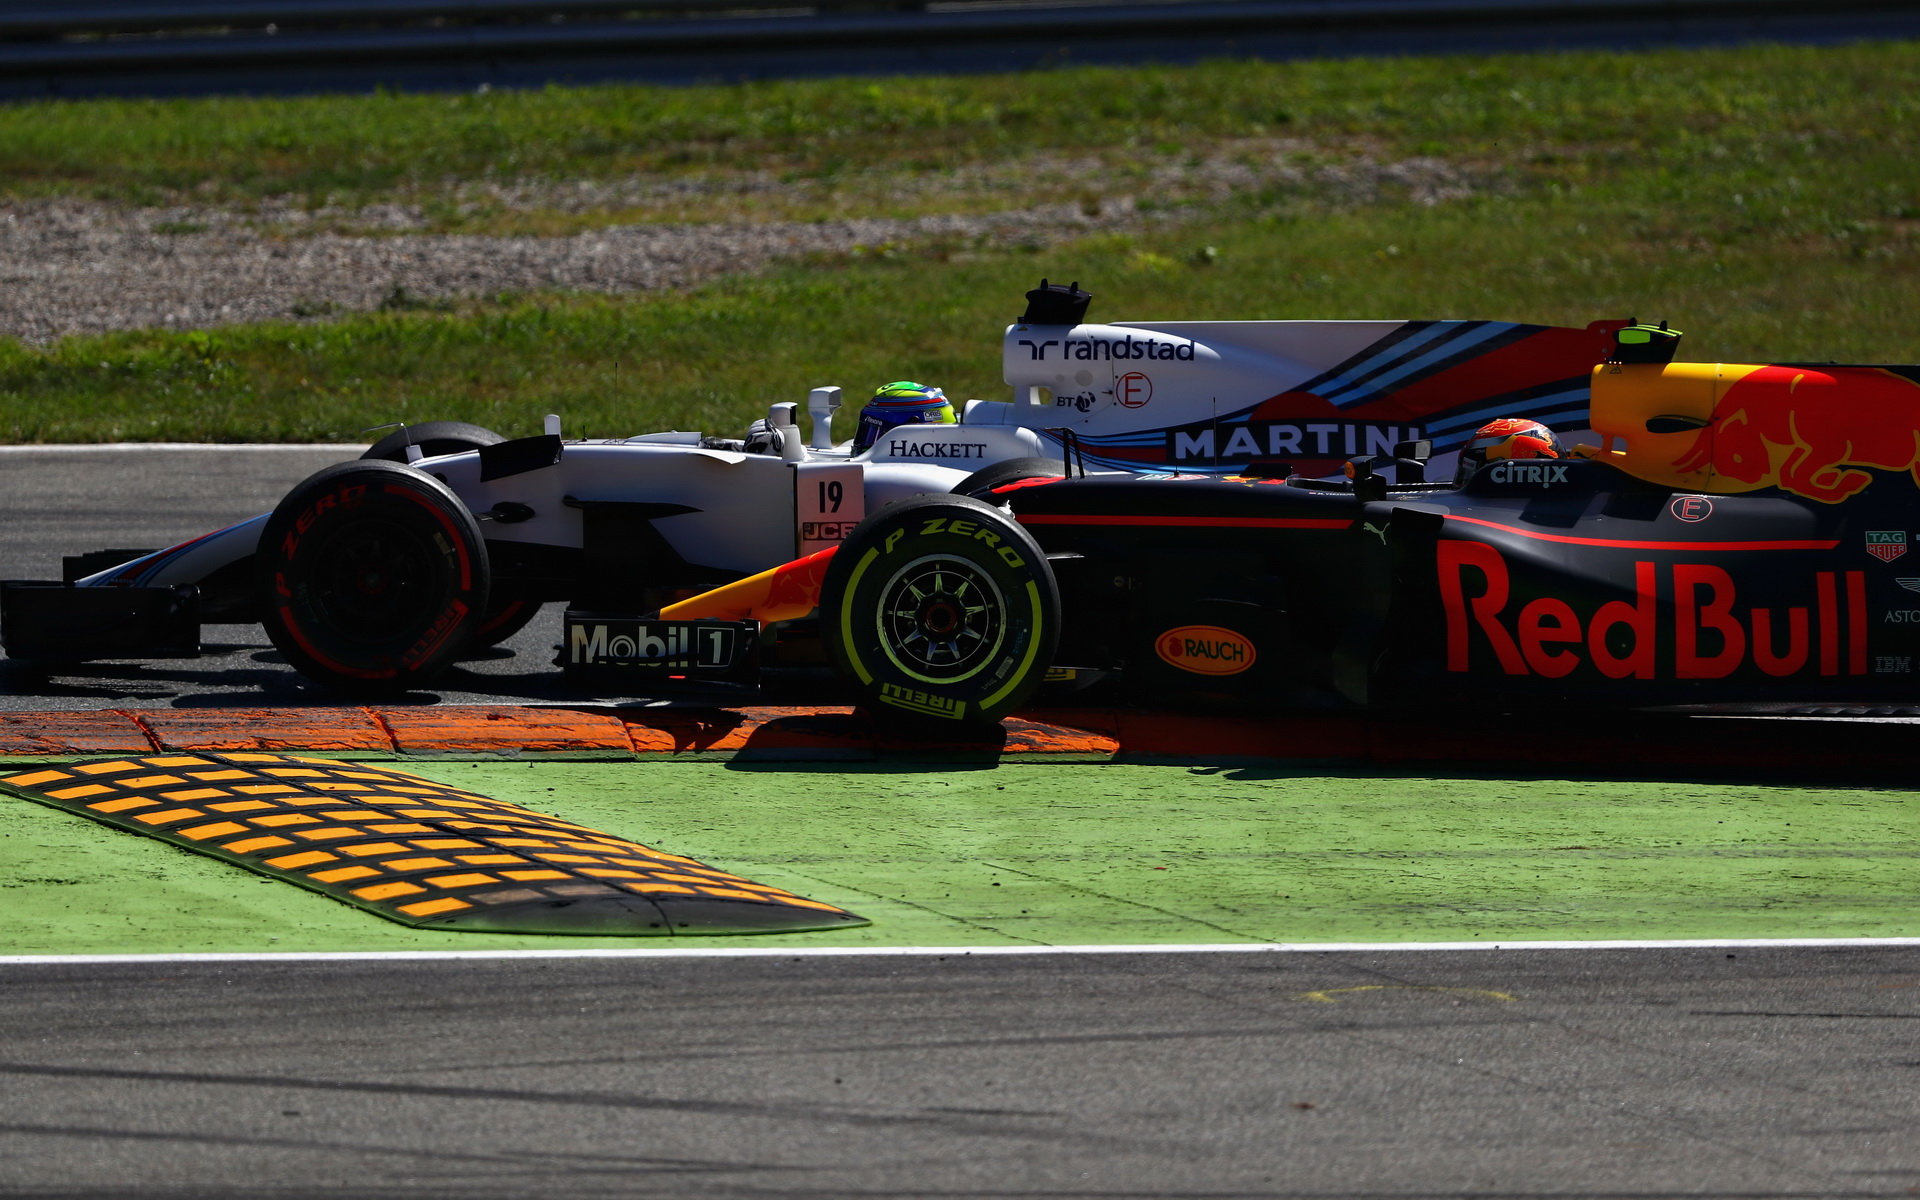 Max Verstappen a Felipe Massa v souboji v závodě v Itálii